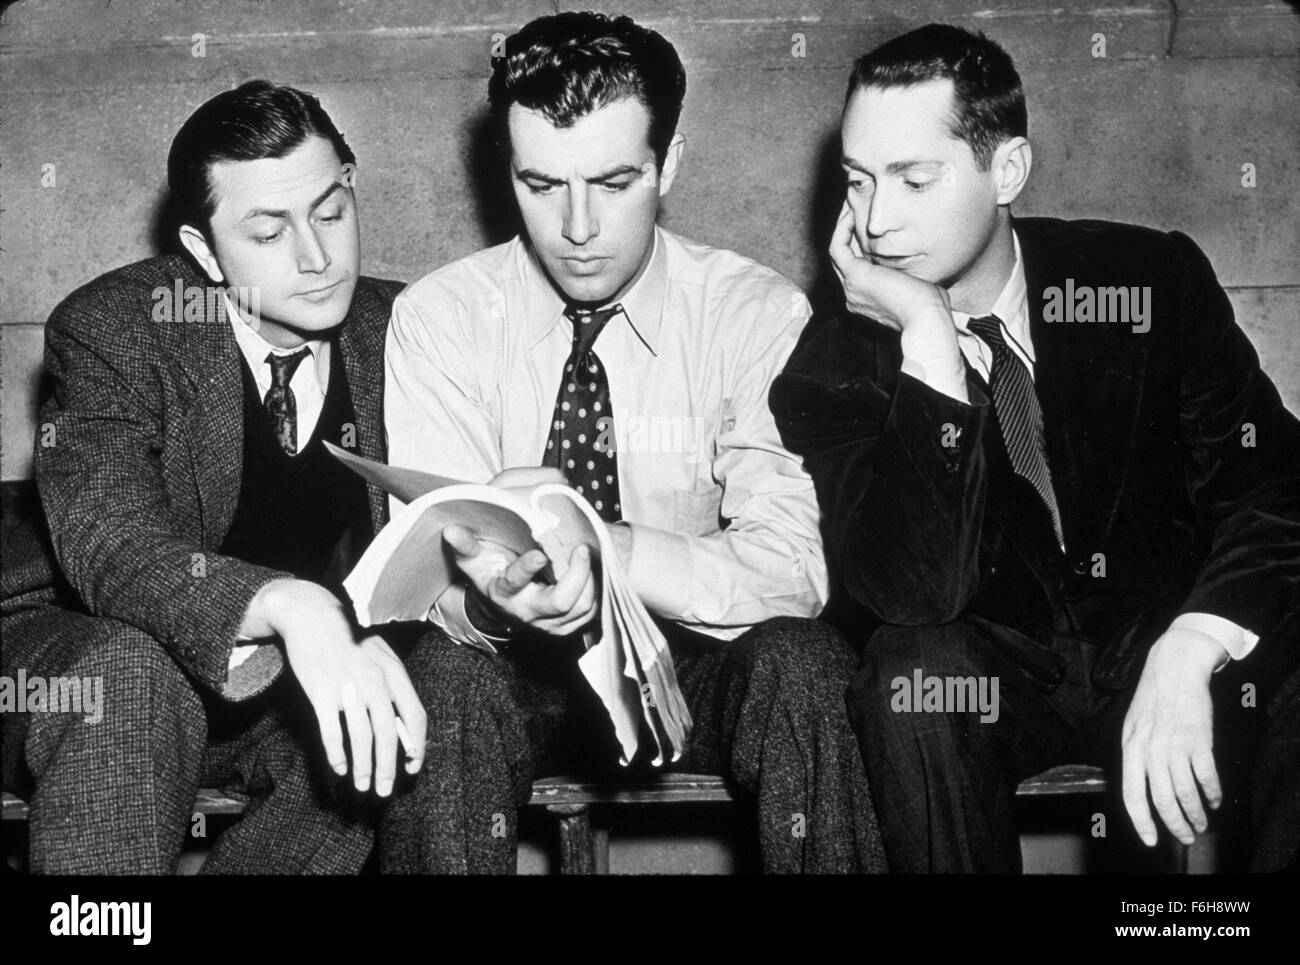 1938, le titre du film : trois camarades, Directeur : FRANK BORZAGE, Studio : MGM, Photo : FRANK BORZAGE, ROBERT TAYLOR, FRANCHOT TONE. (Crédit Image : SNAP) Banque D'Images